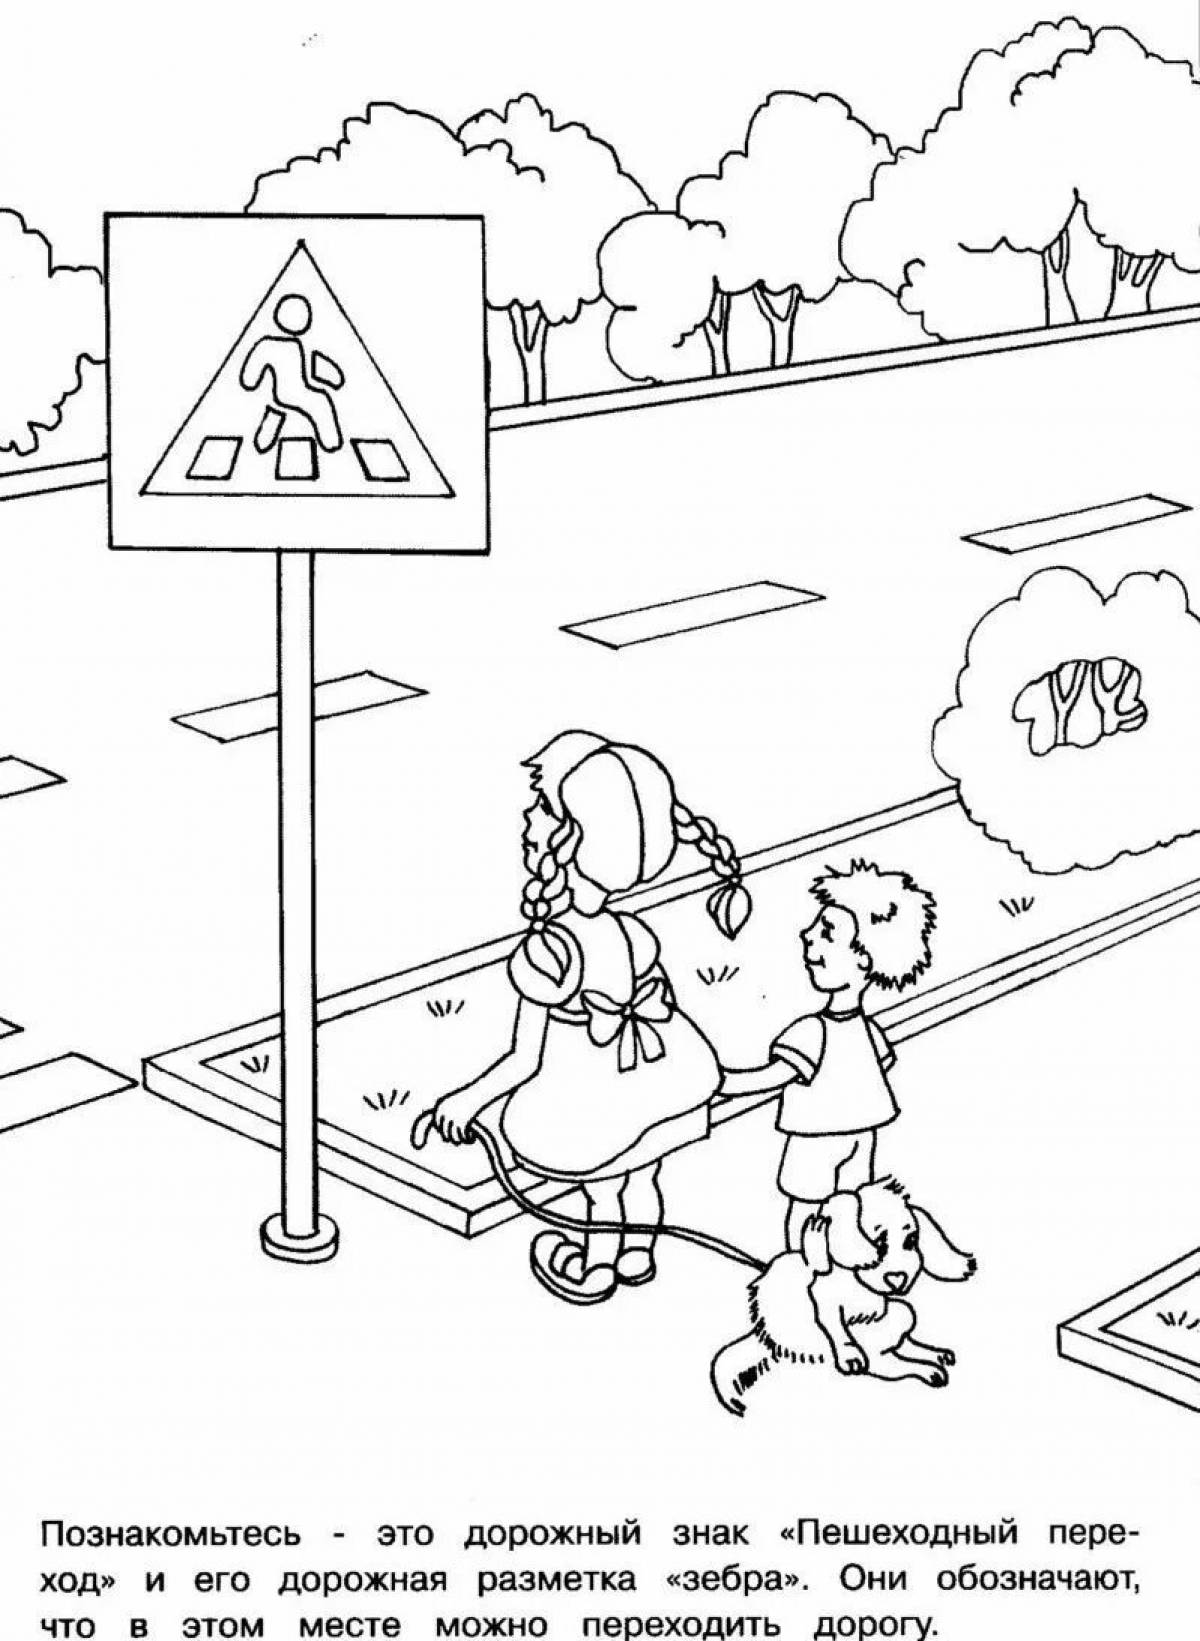 На тему правила дорожного движения для детского сада #12